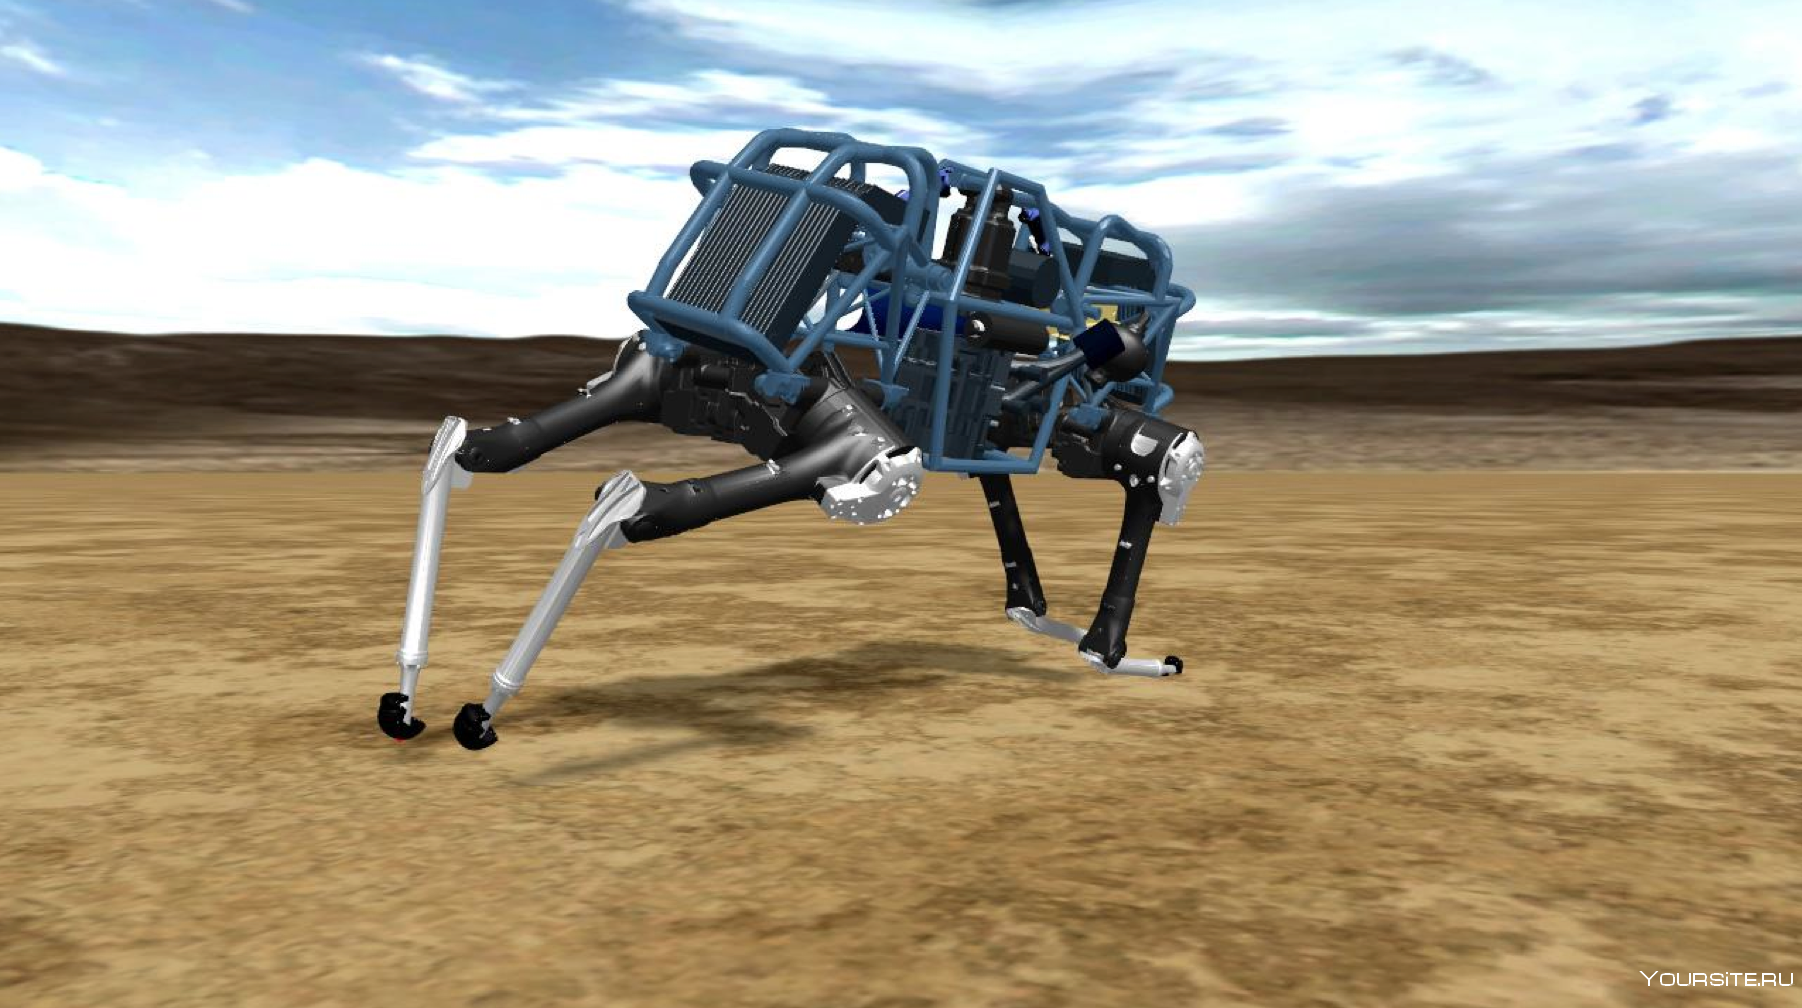 Wildcat робот Boston Dynamics. Бостон Дайнемикс Cheetah. Cheetah робот Boston Dynamics. Робот гепард Boston Dynamics. Шагающая техника